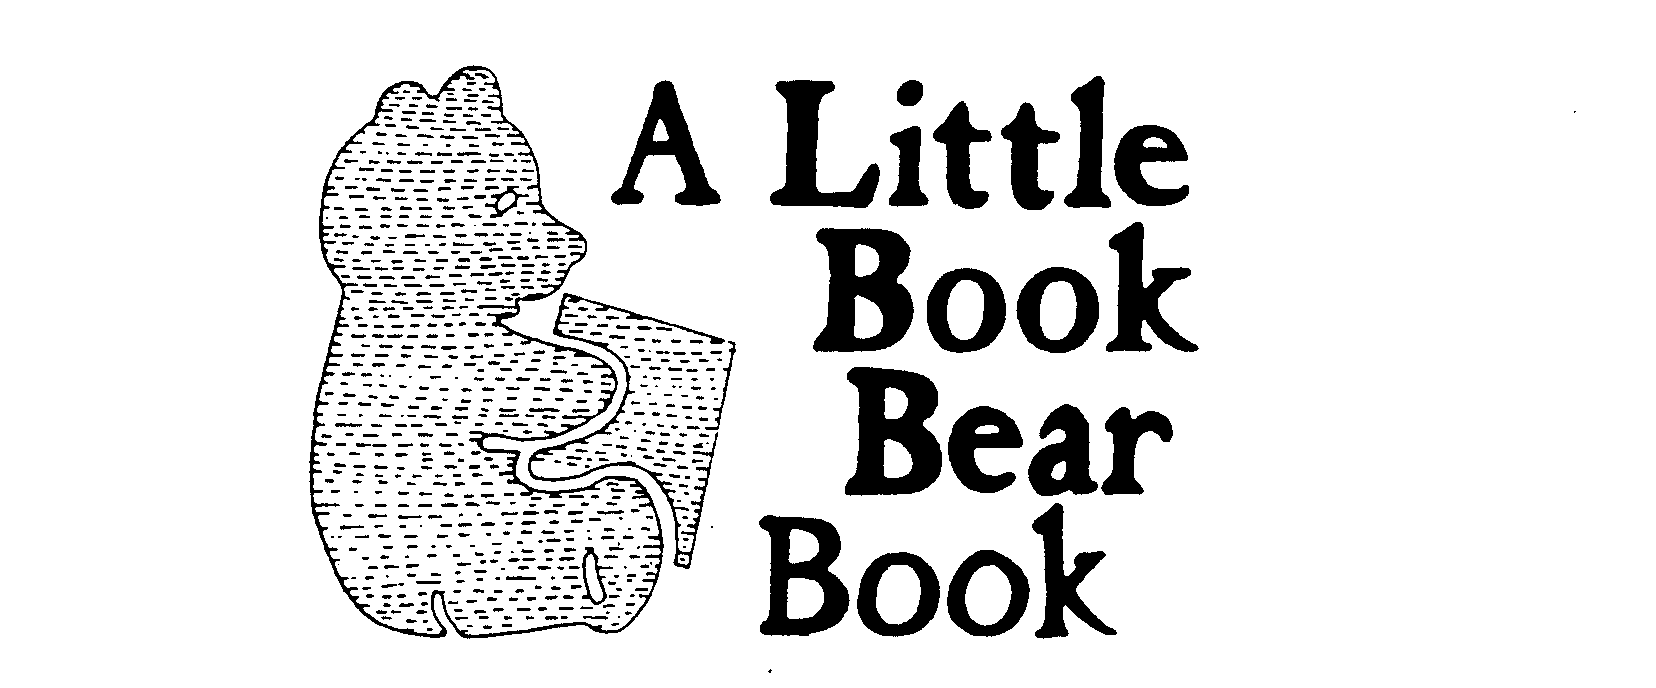  A LITTLE BOOK BEAR BOOK